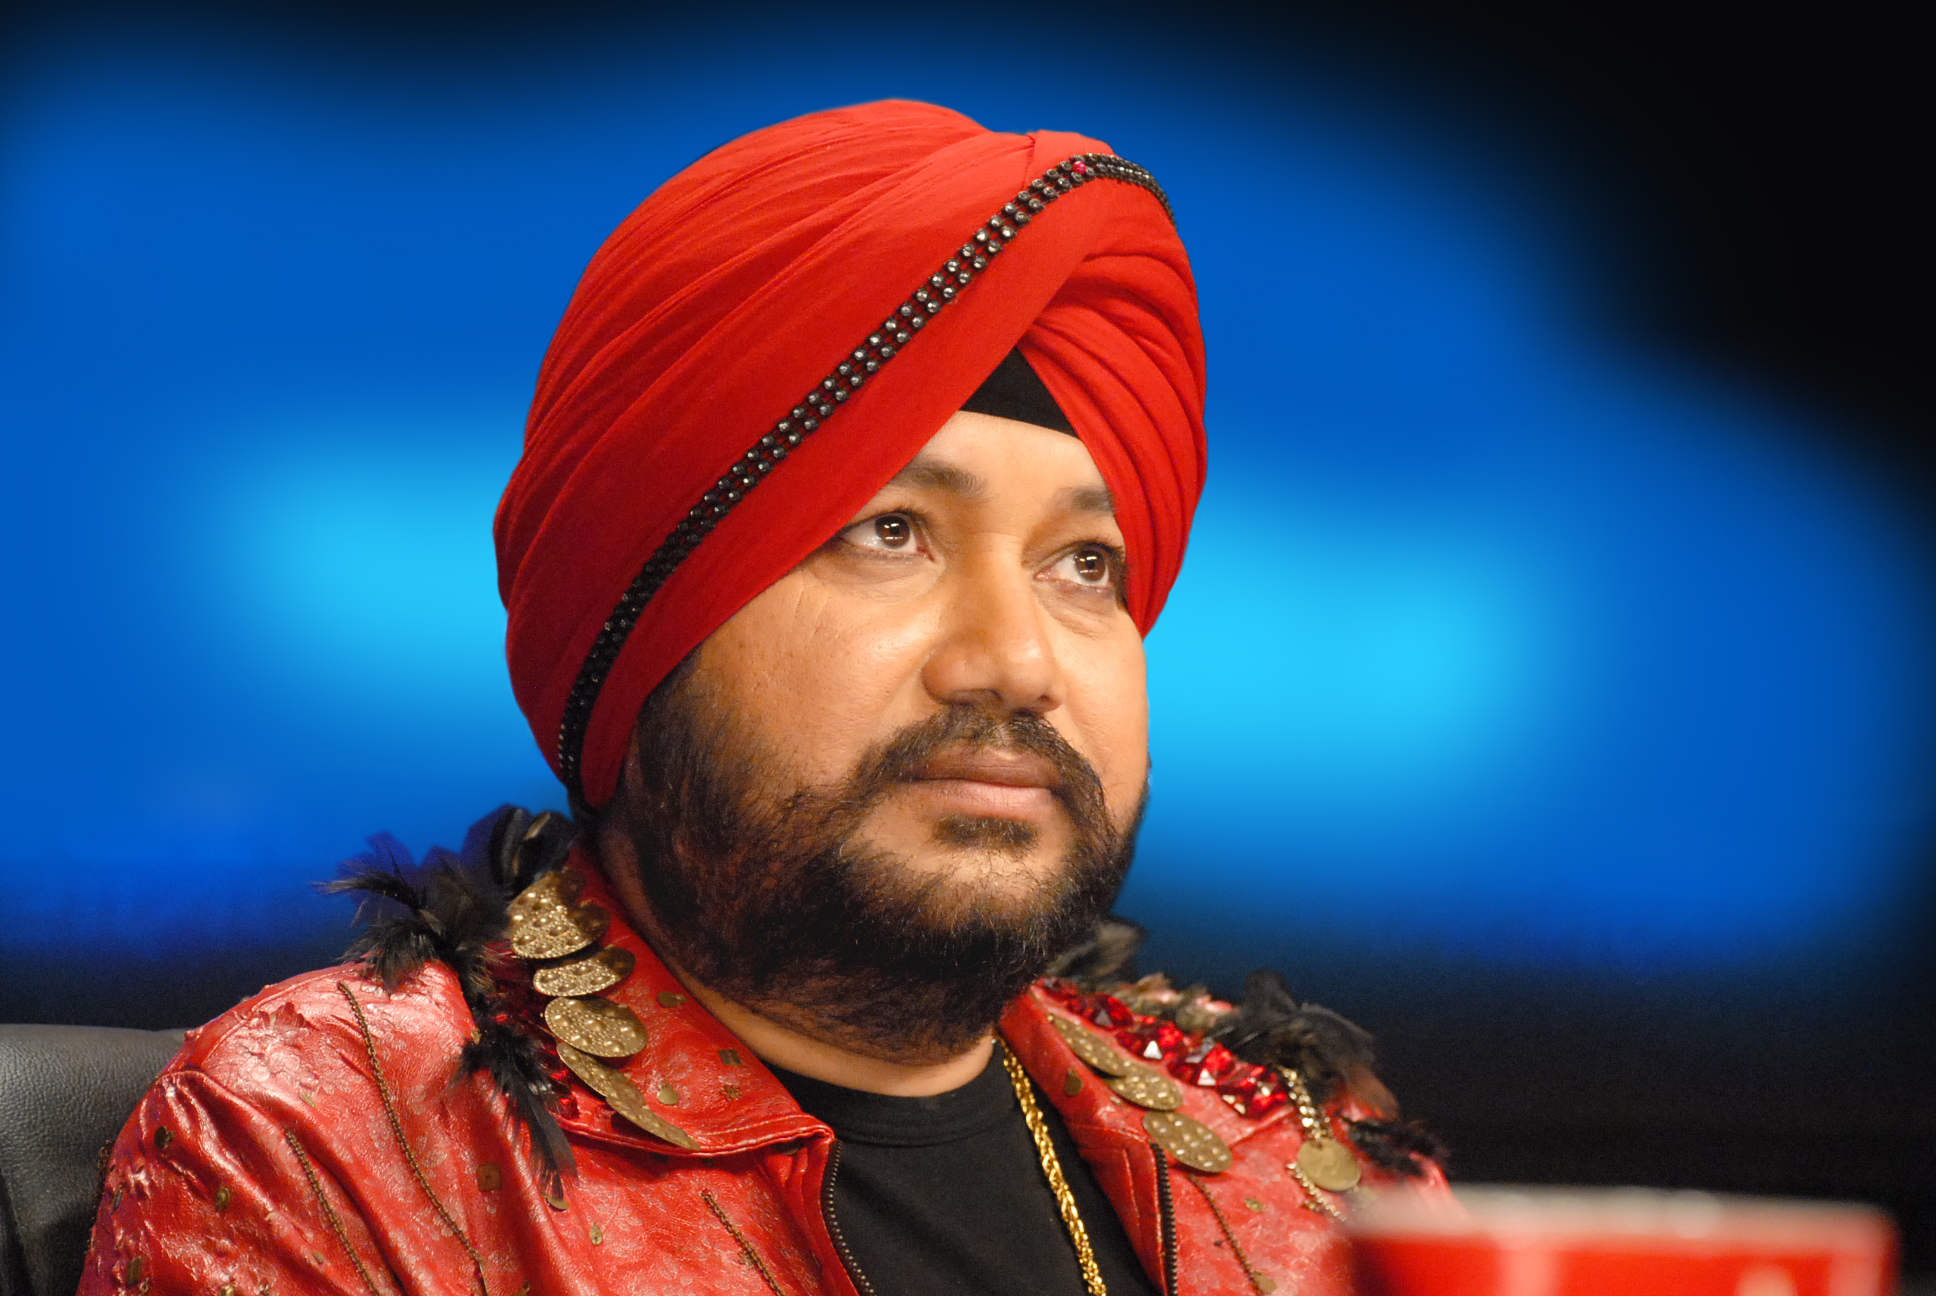 Singer Daler Mehndi In Red Turban